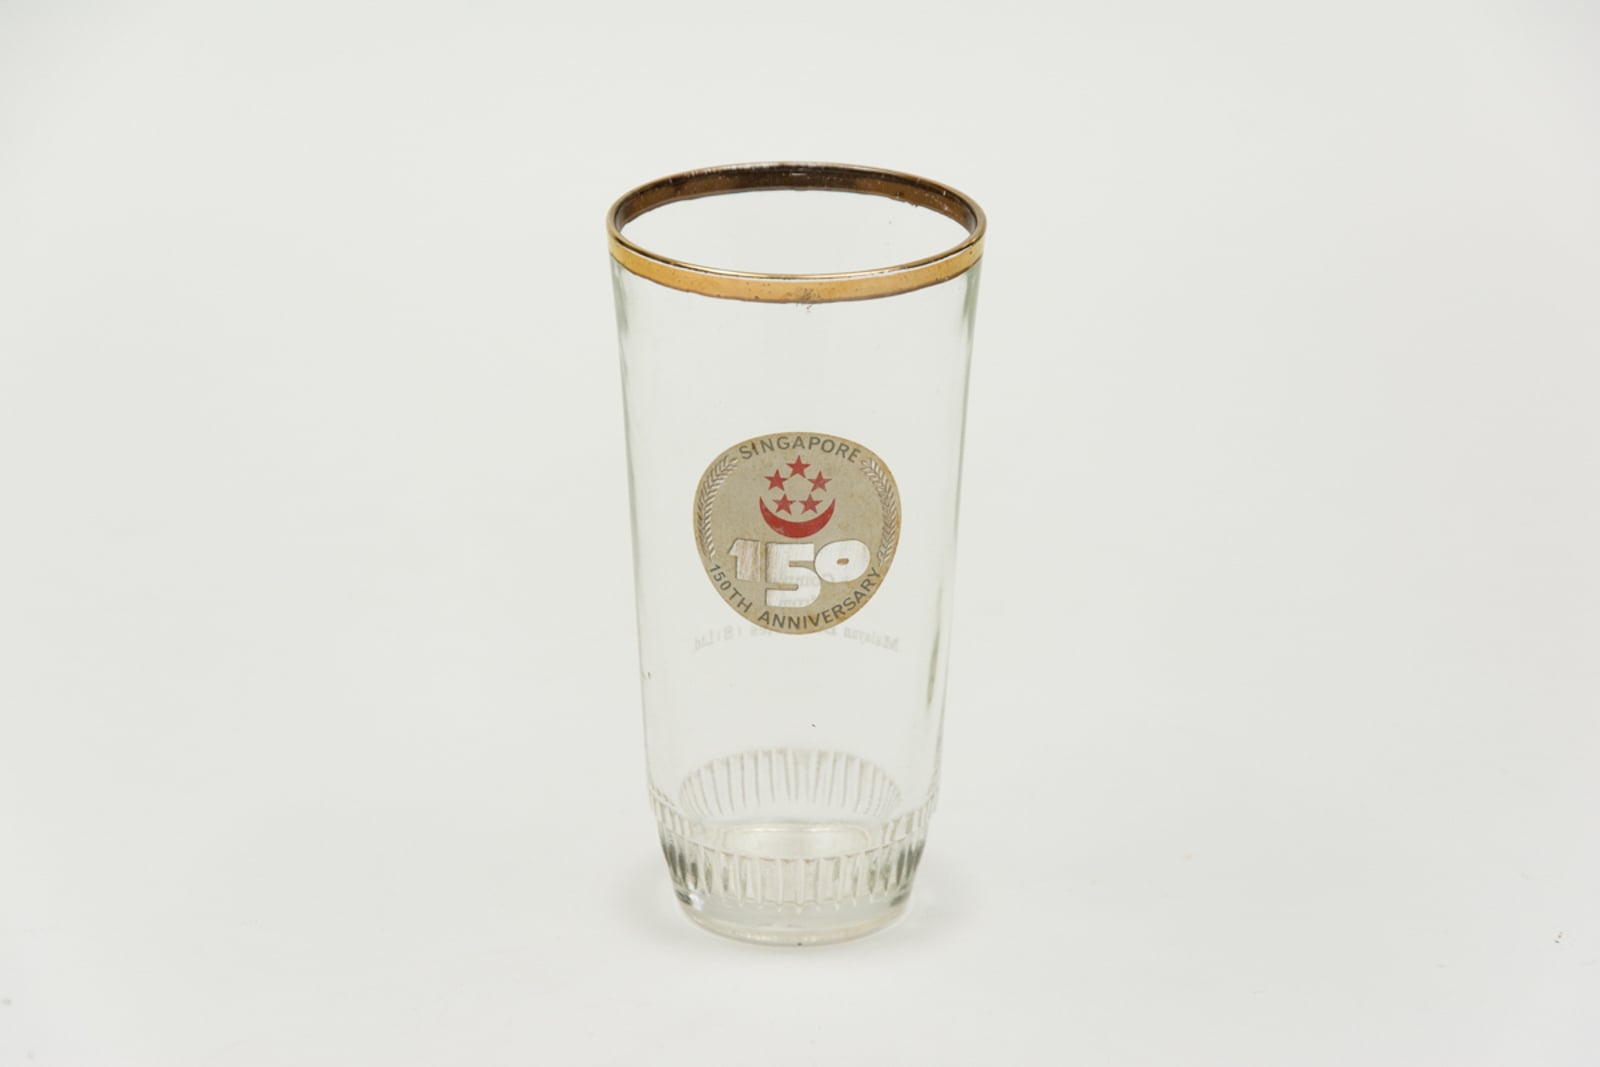 Singapore 150th Anniversary Shaker Pint Glassware